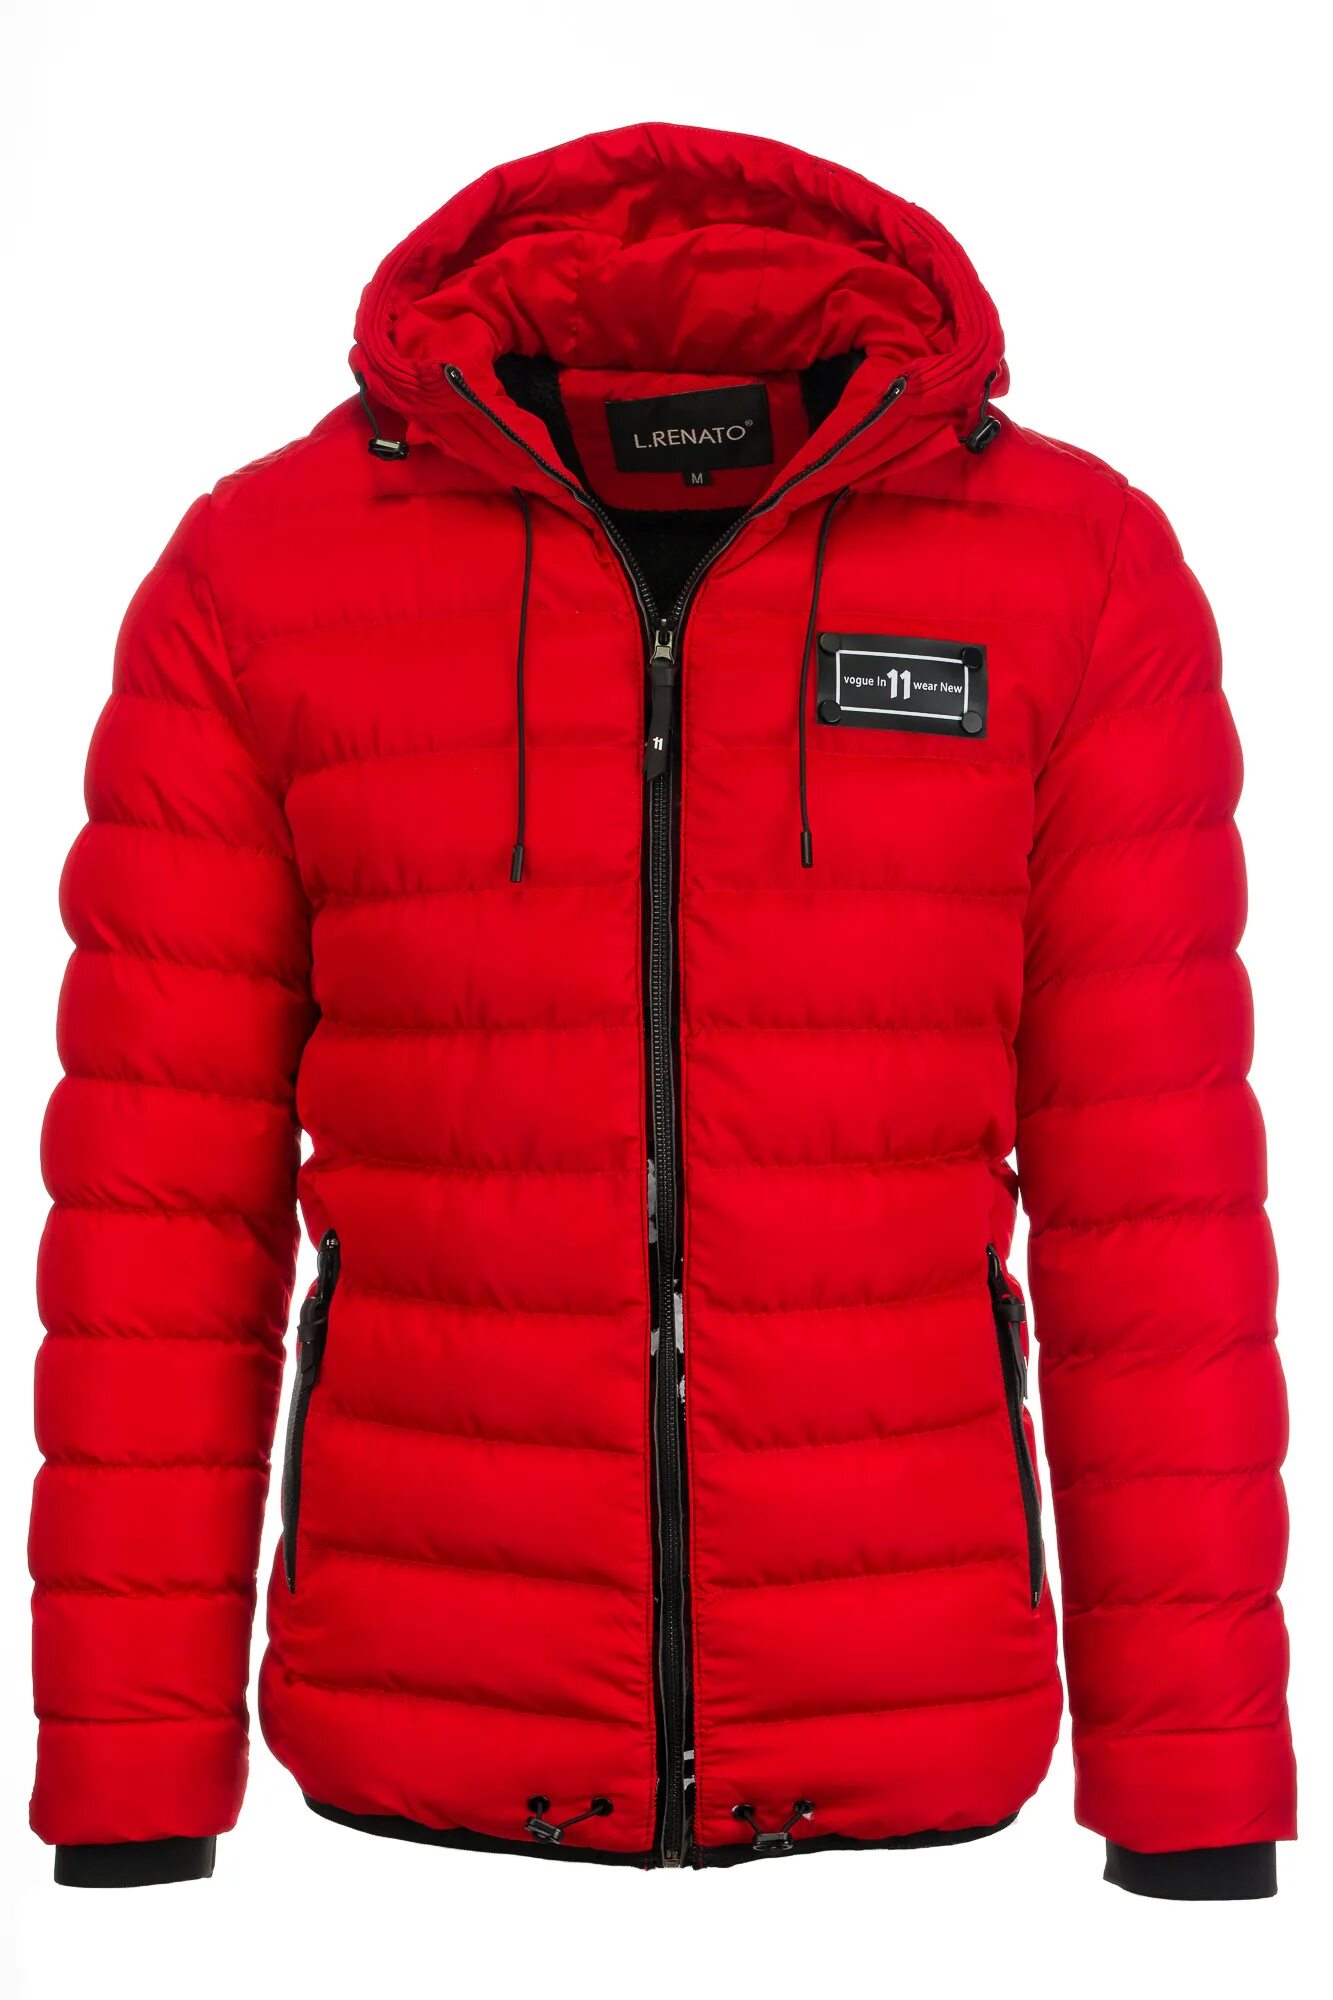 Красная куртка мужчины. Savage красная куртка 40149. Пуховик Finn Flare мужской красный. Ice Energy куртка мужская зимняя красная. ZST 3xl куртка.